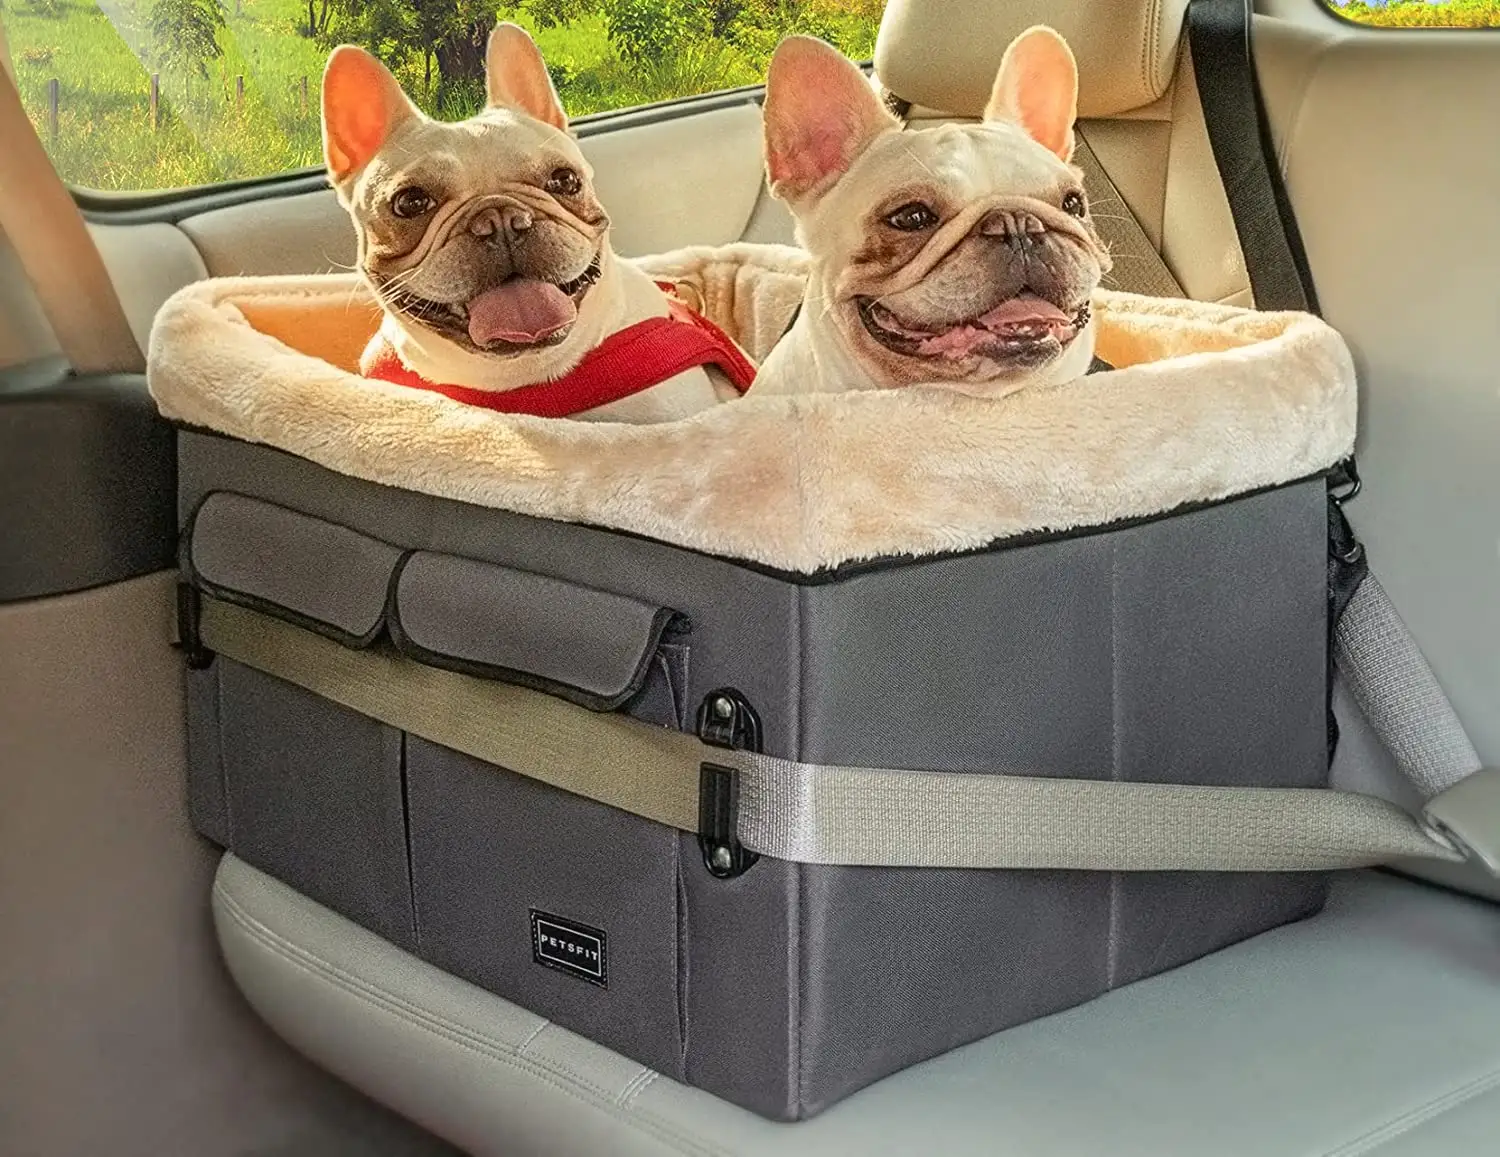 Jw assento protetor para cachorros, assento de carro, assento acolchoado, anti poeira, de alta qualidade para animais de estimação